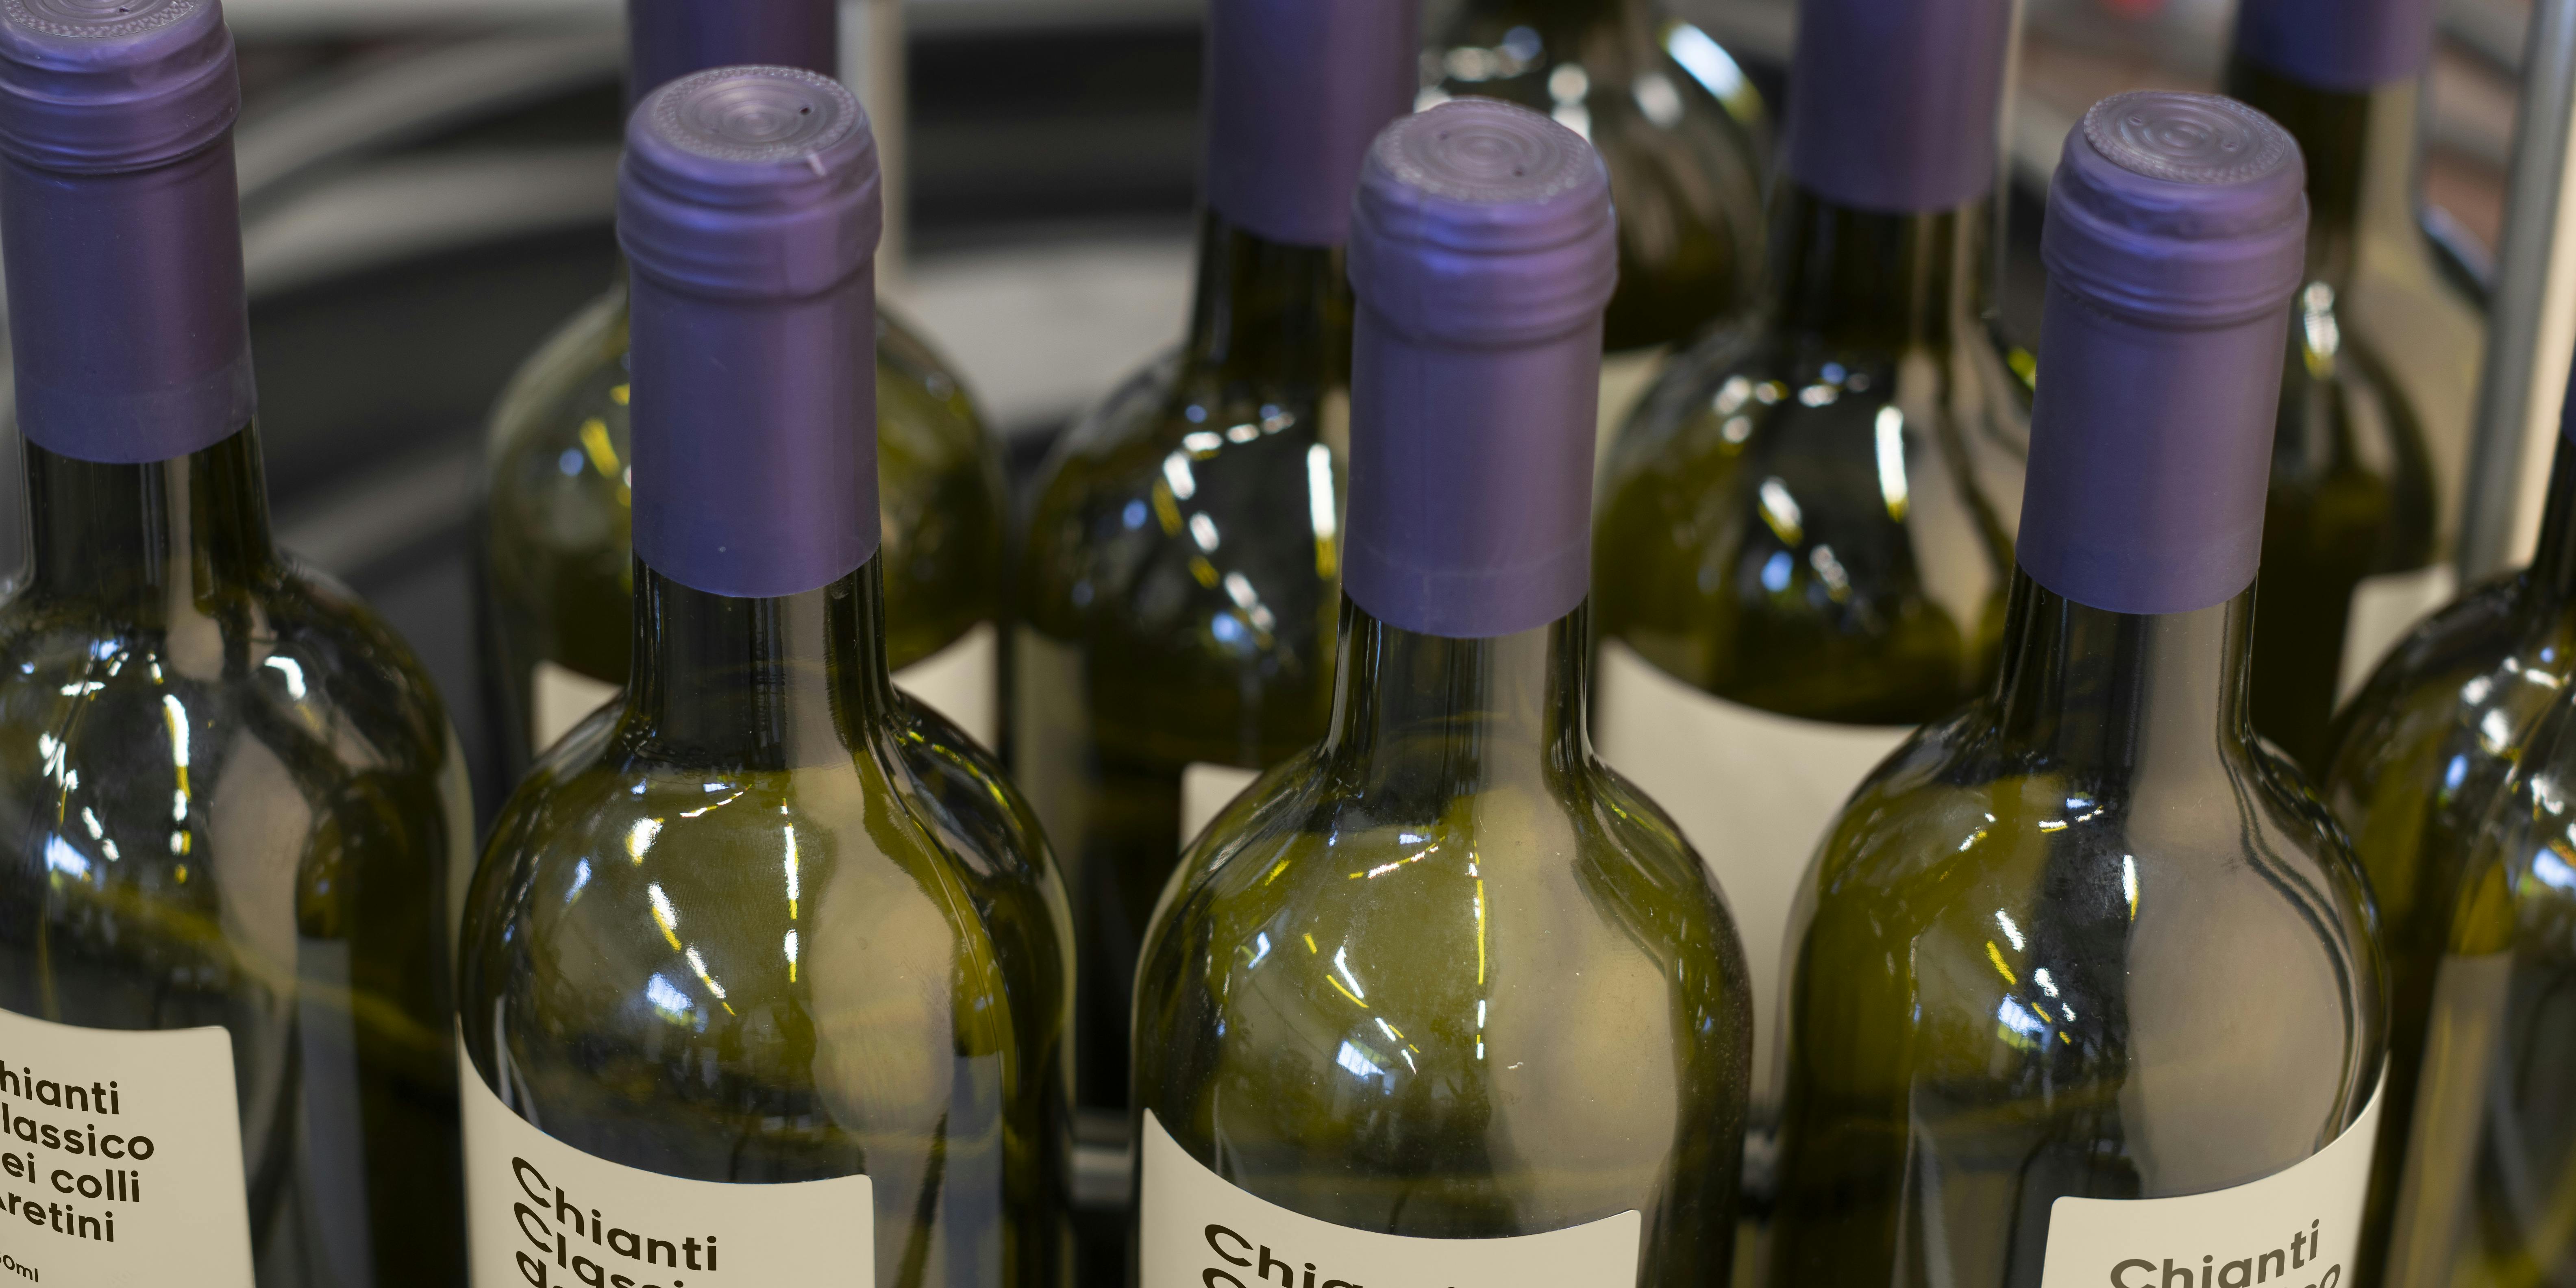 Una tavola indicata per l'accumulo di bottiglie, in questo caso vi sono collocate delle bottiglie di vino con capsula viola ed etichetta personalizzata Quinti